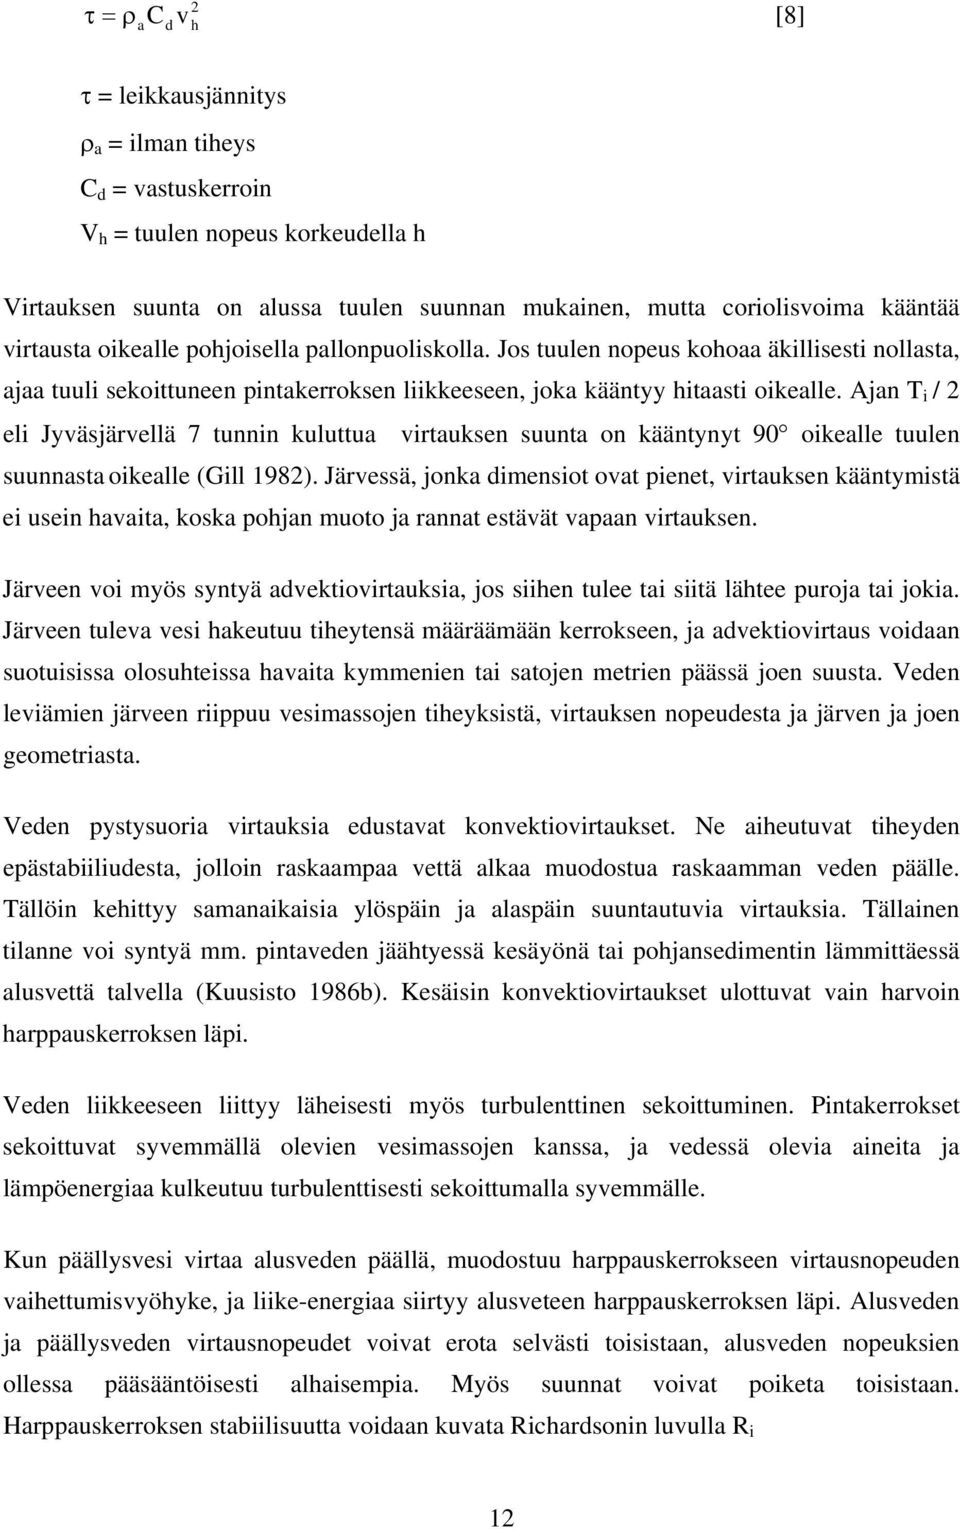 Ajan T i / 2 eli Jyväsjärvellä 7 tunnin kuluttua virtauksen suunta on kääntynyt 90 oikealle tuulen suunnasta oikealle (Gill 1982).